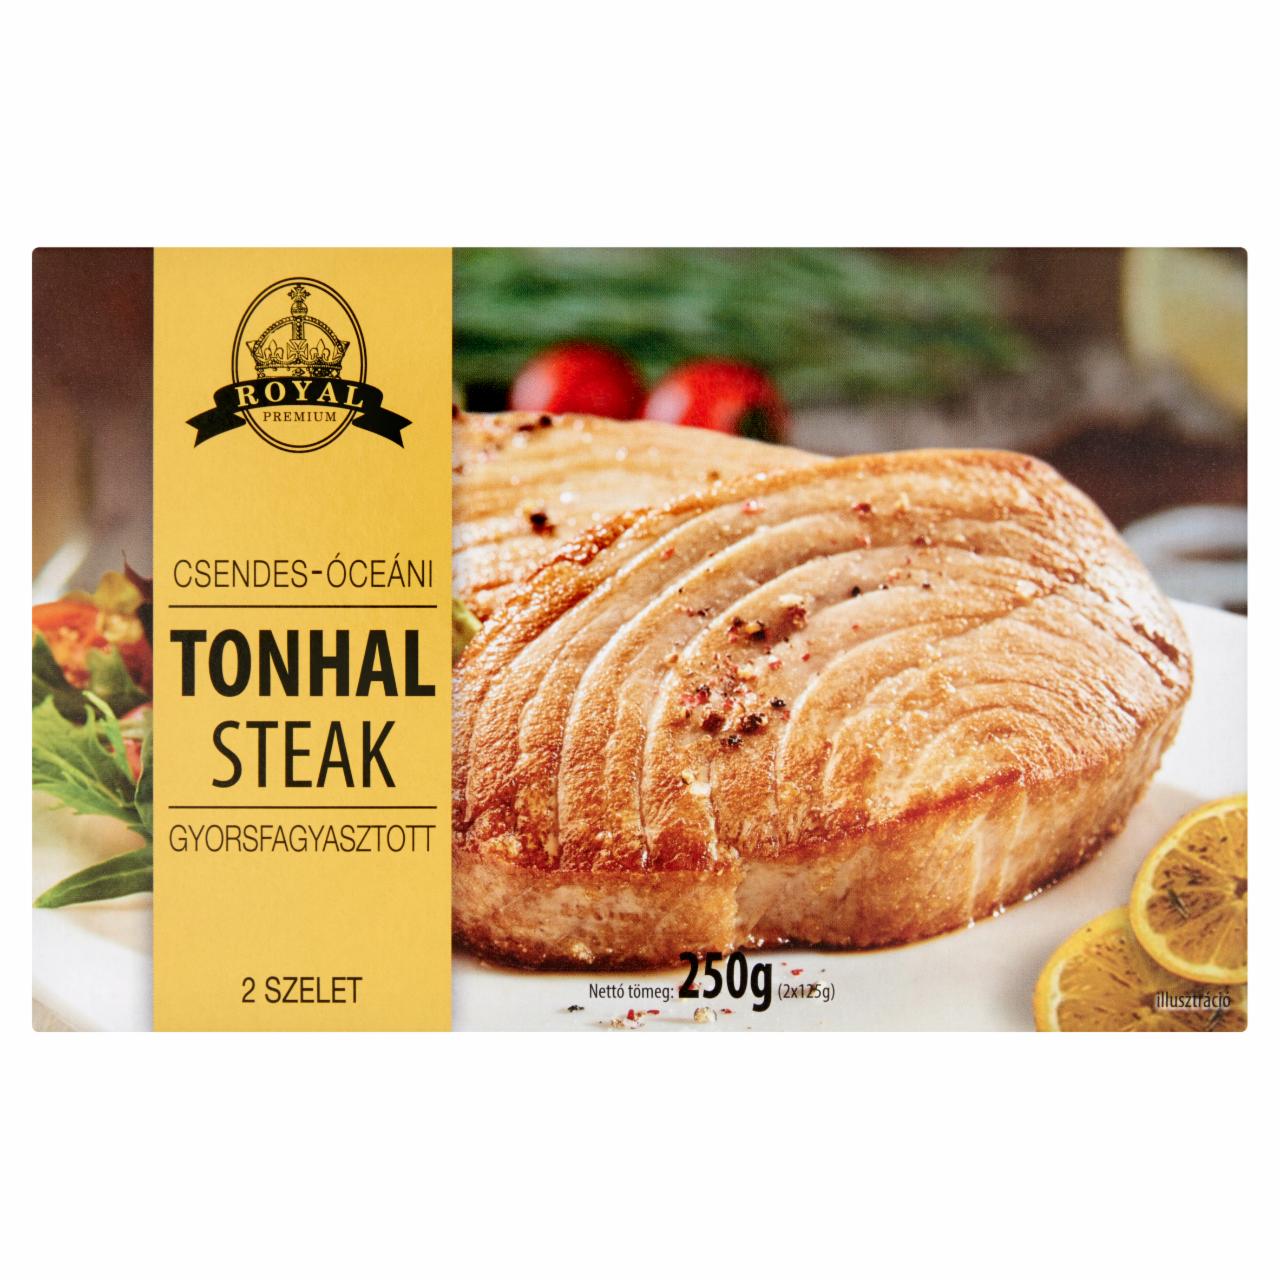 Képek - Royal gyorsfagyasztott csendes-óceáni tonhal steak 2 x 125 g (250 g)